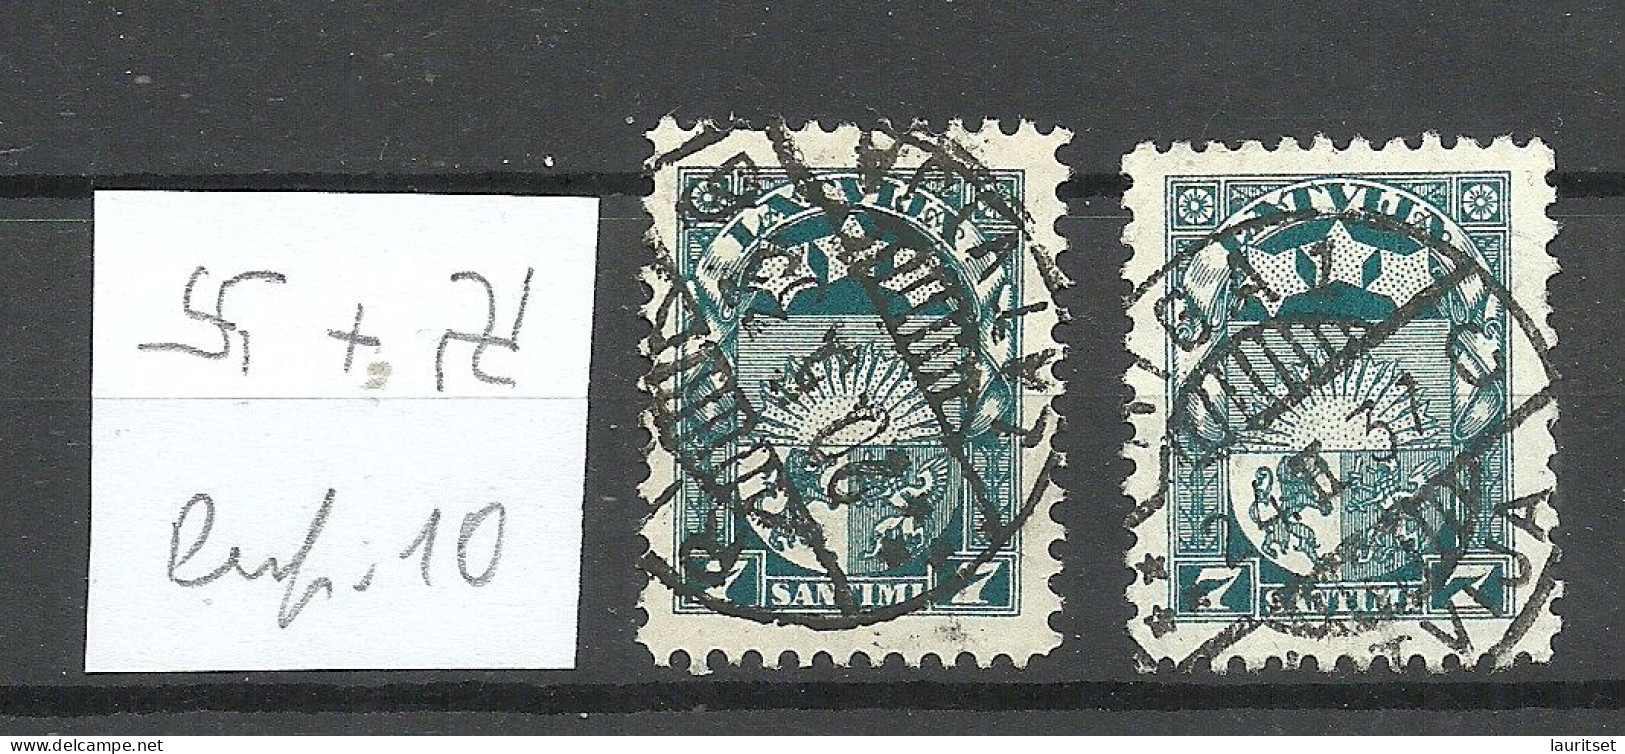 LETTLAND Latvia 1931 Michel 173 Perf 10  Normal + Inverted Watermark - Latvia